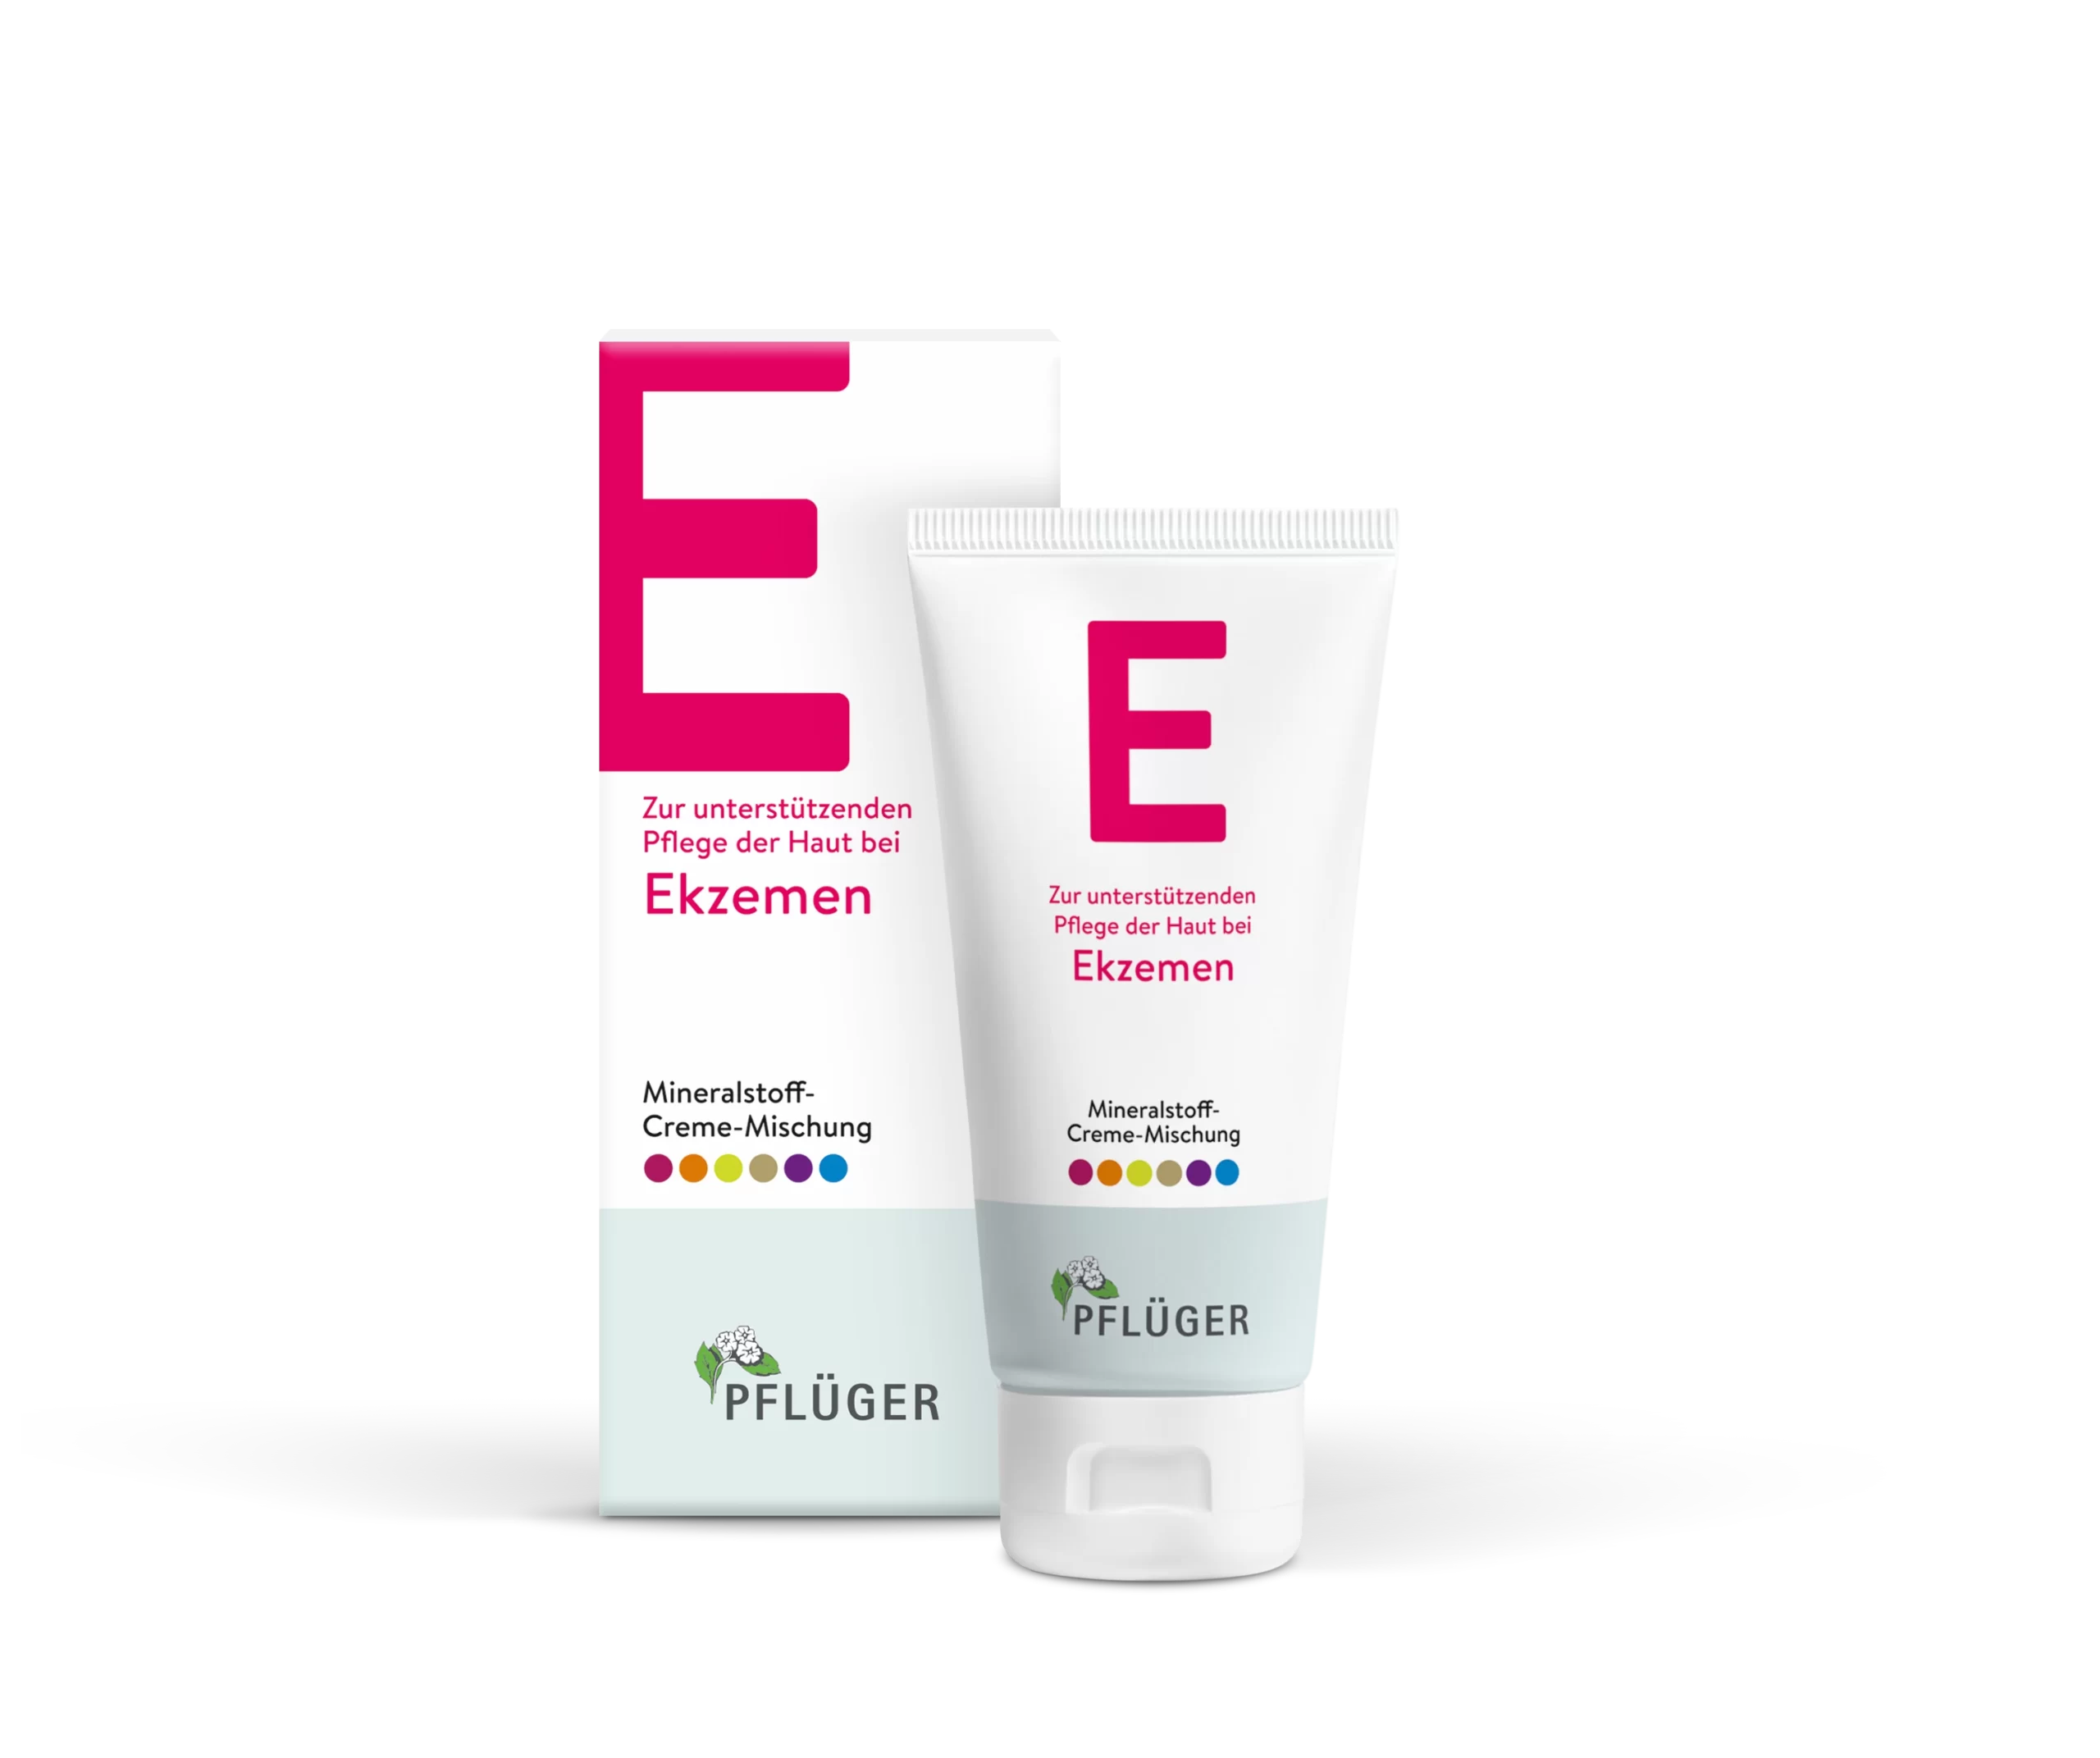 Mineral-Cream-Blend E, Supportive Skin Care in Eczema